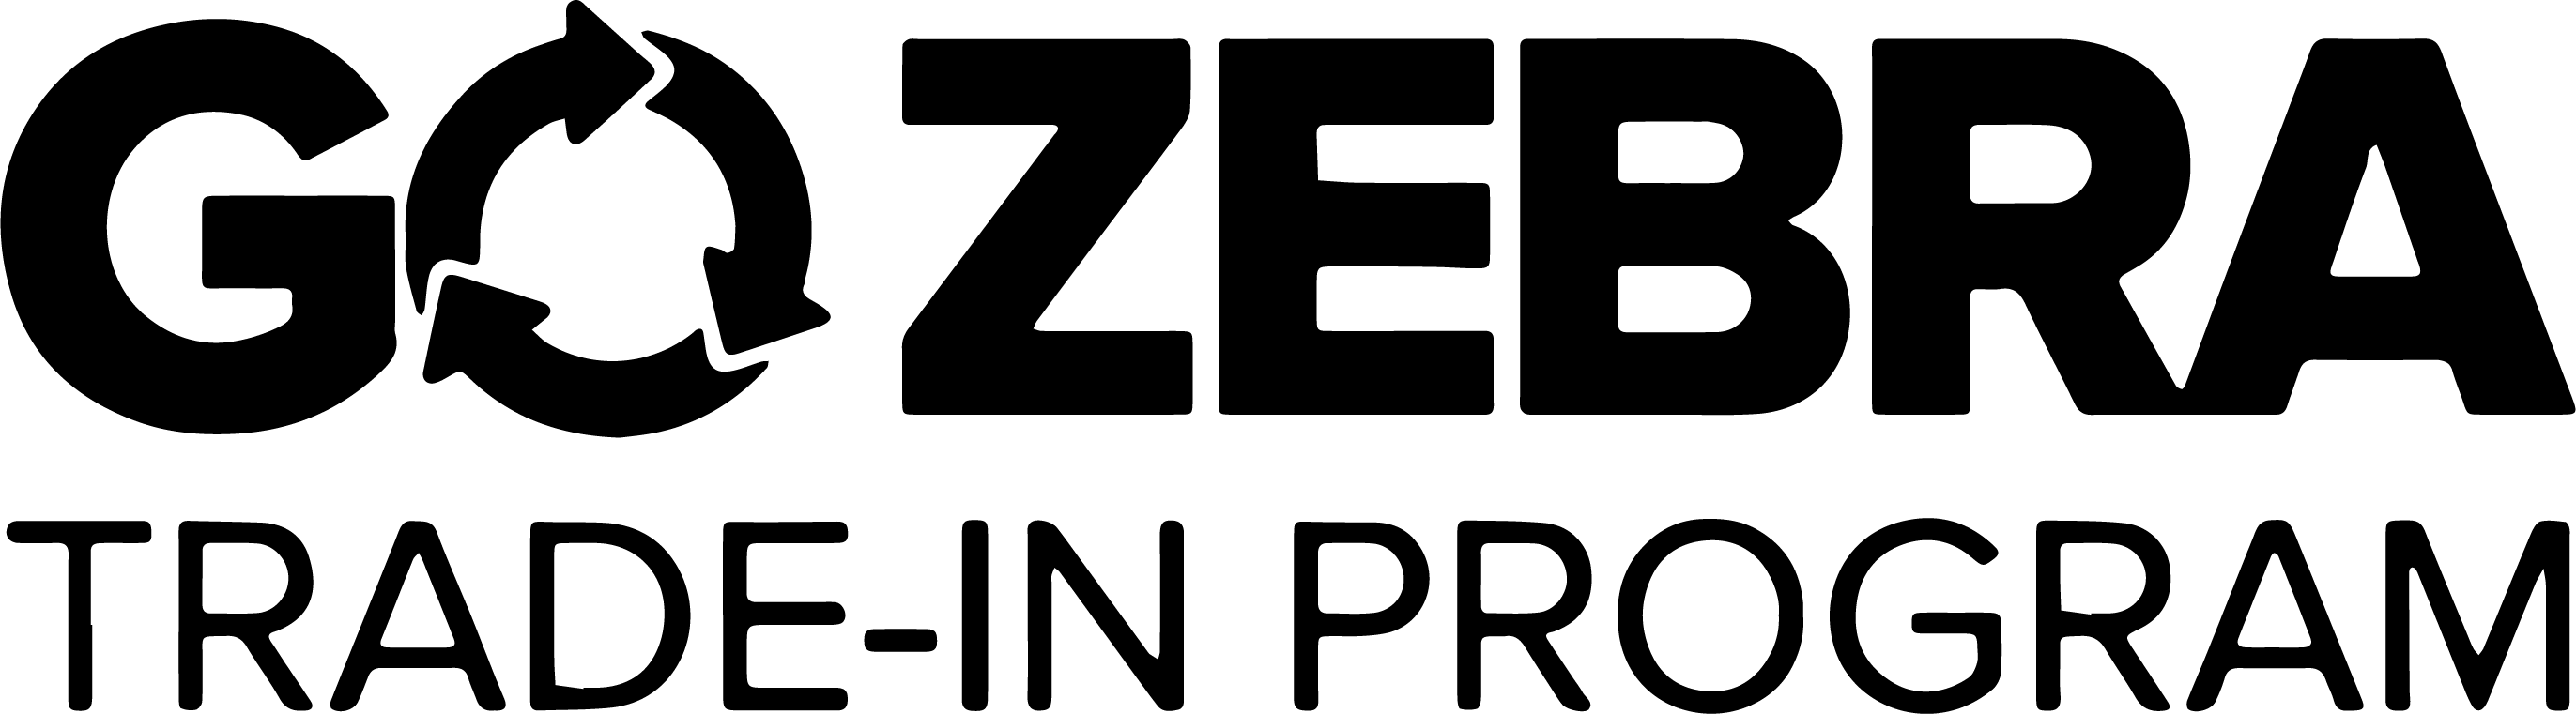 GO-Zebra-trade-in-logo